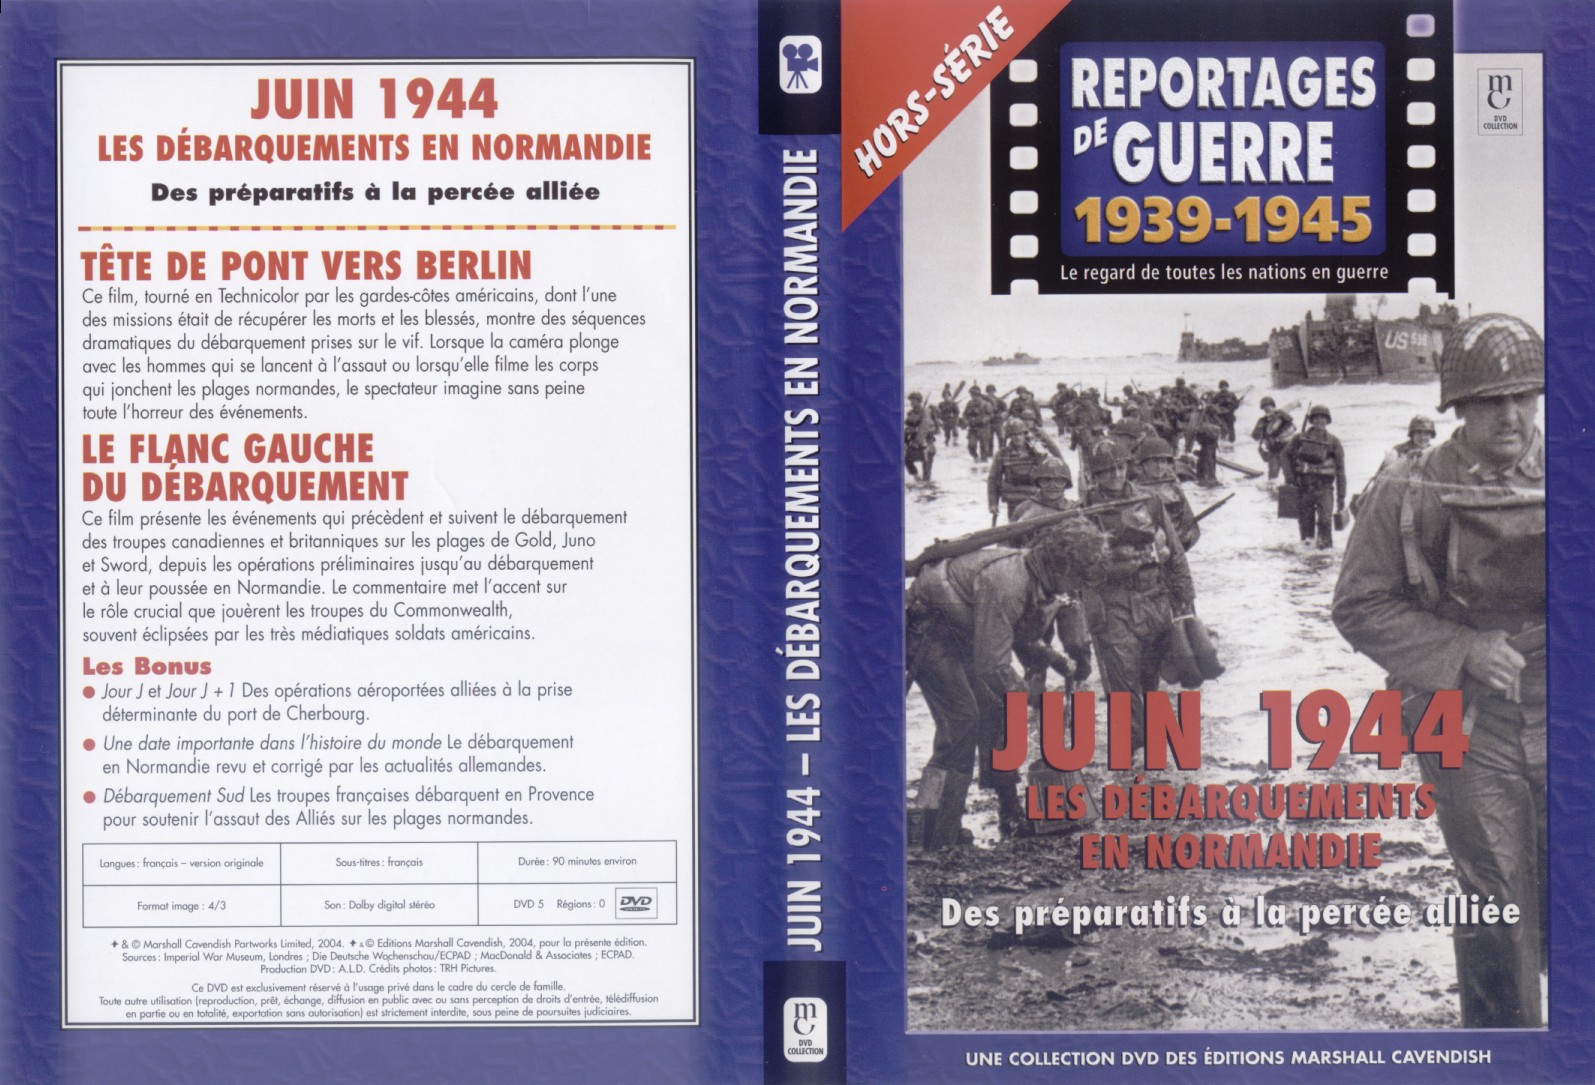 Jaquette DVD Reportages de guerre - Juin 1944 les dbarquements en normandie